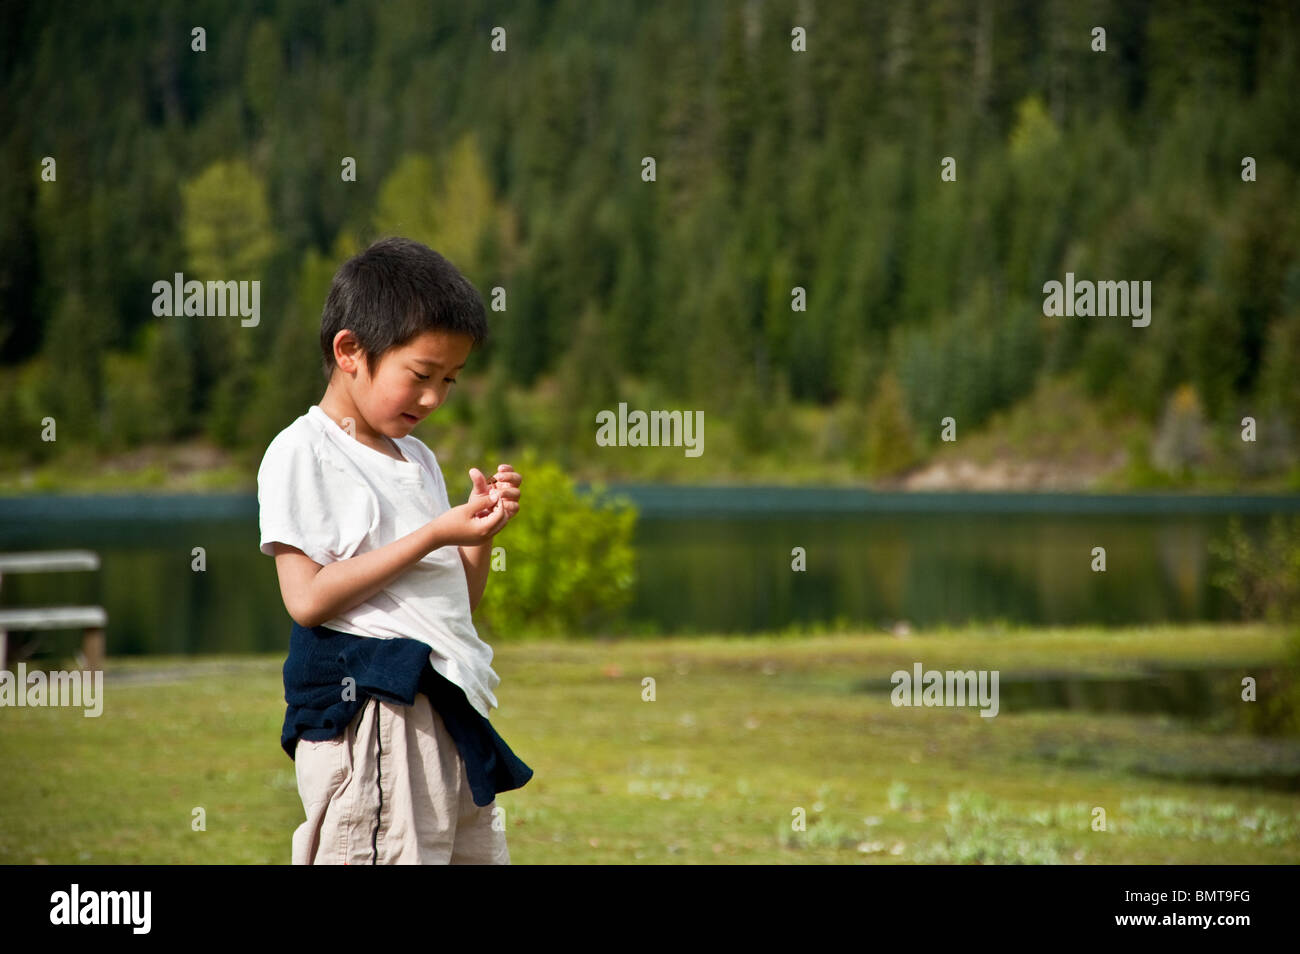 Un garçon asiatique regarde un champignon dans sa main à l'extérieur par un lac Banque D'Images